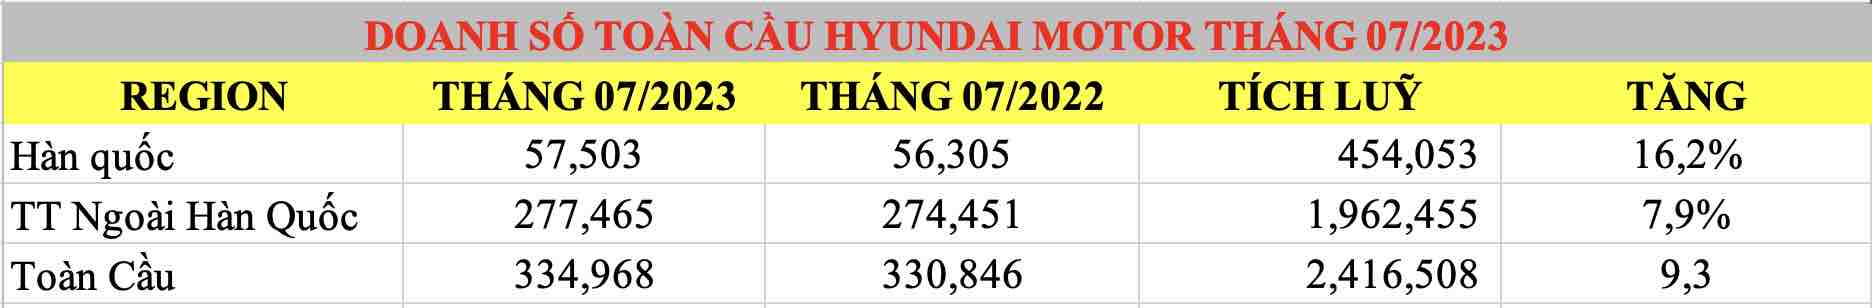 doanh số hyundai toàn cầu tháng 072023